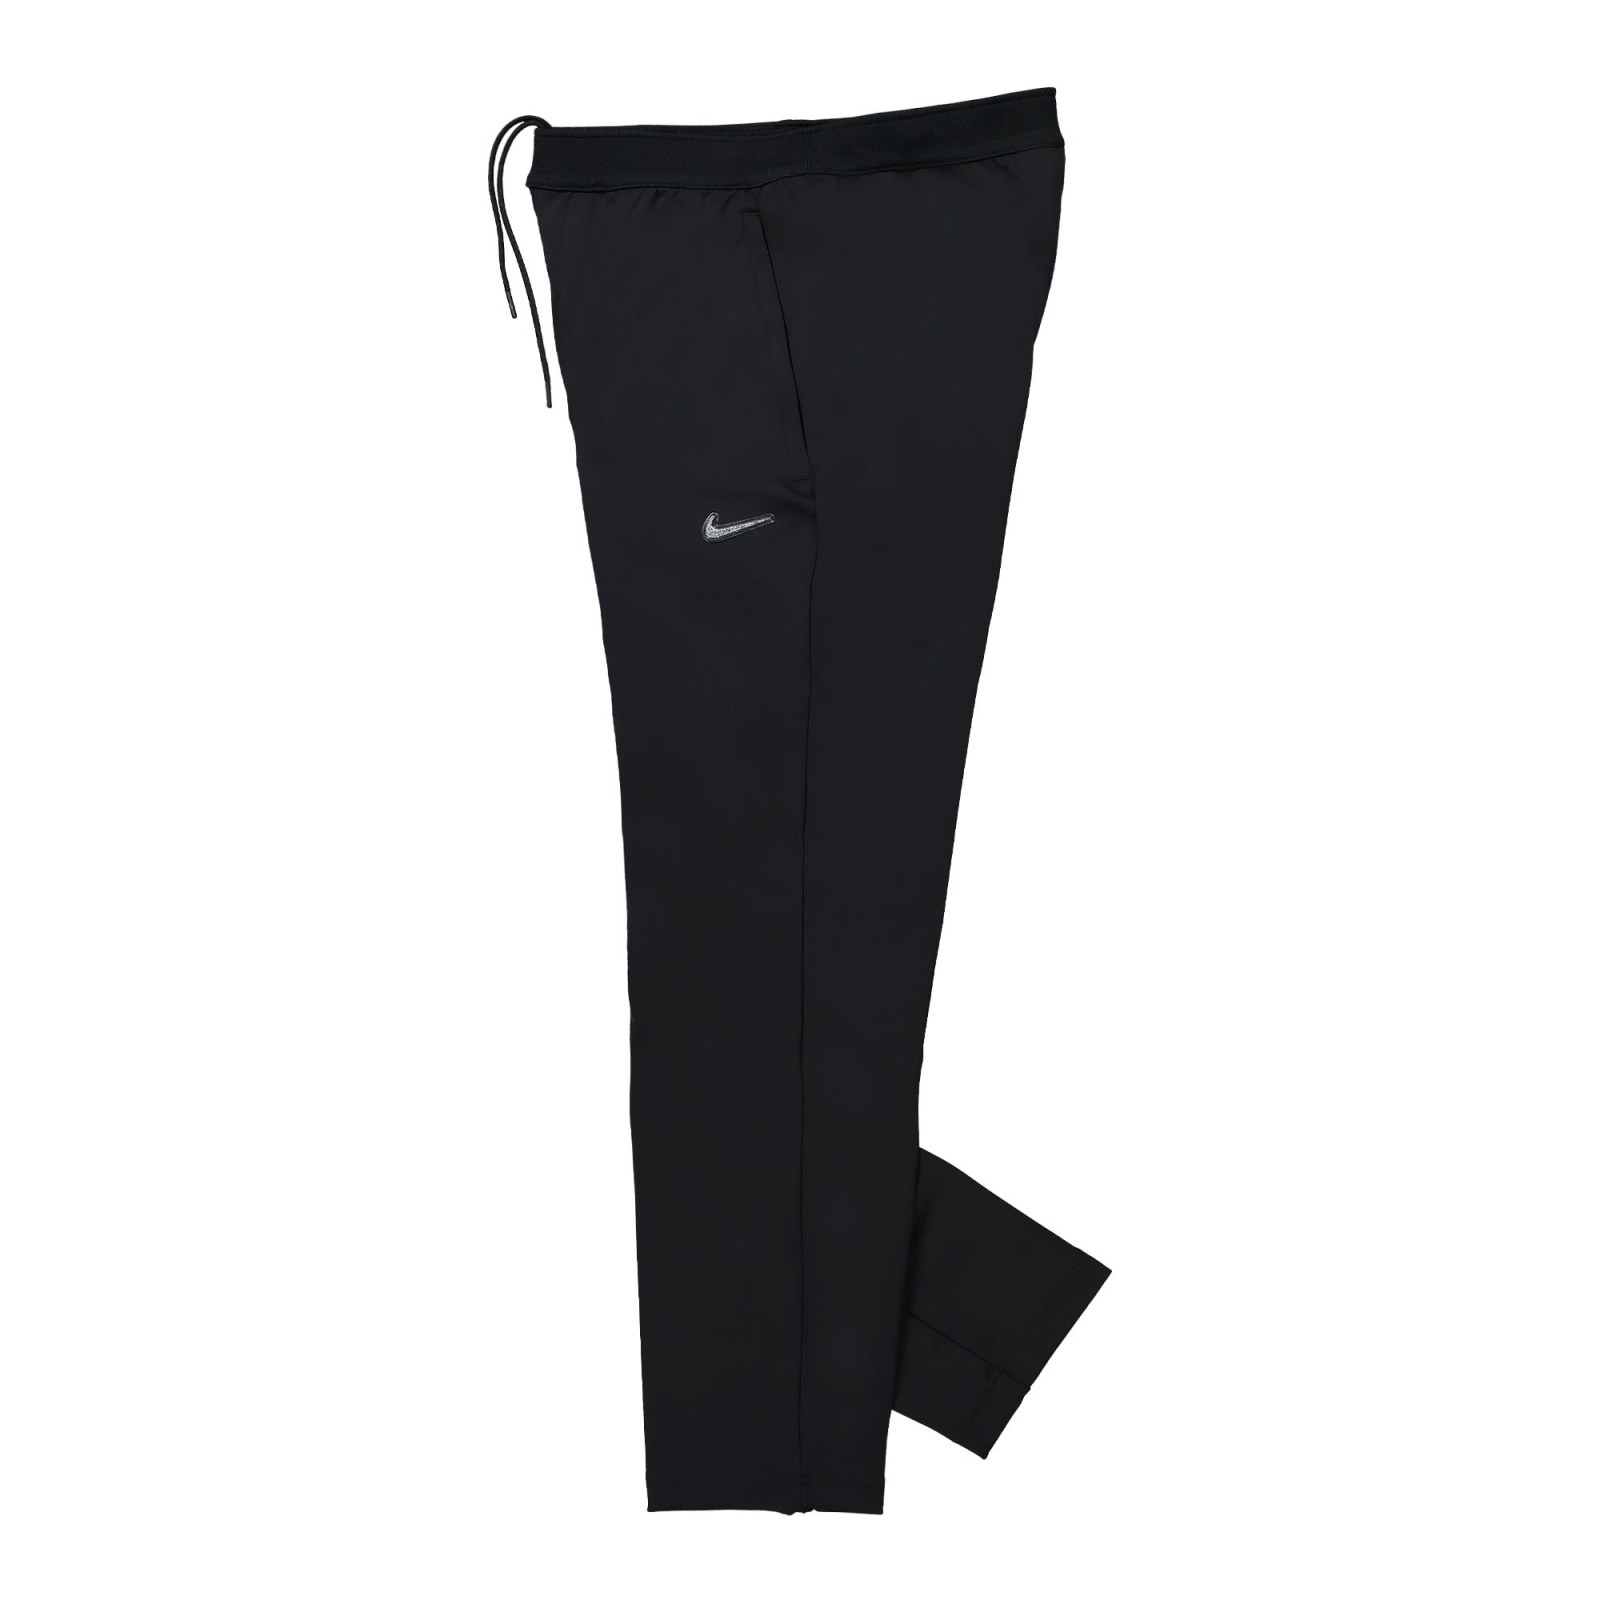 NOCTA x Nike NRG Knit Pant
Black / Black